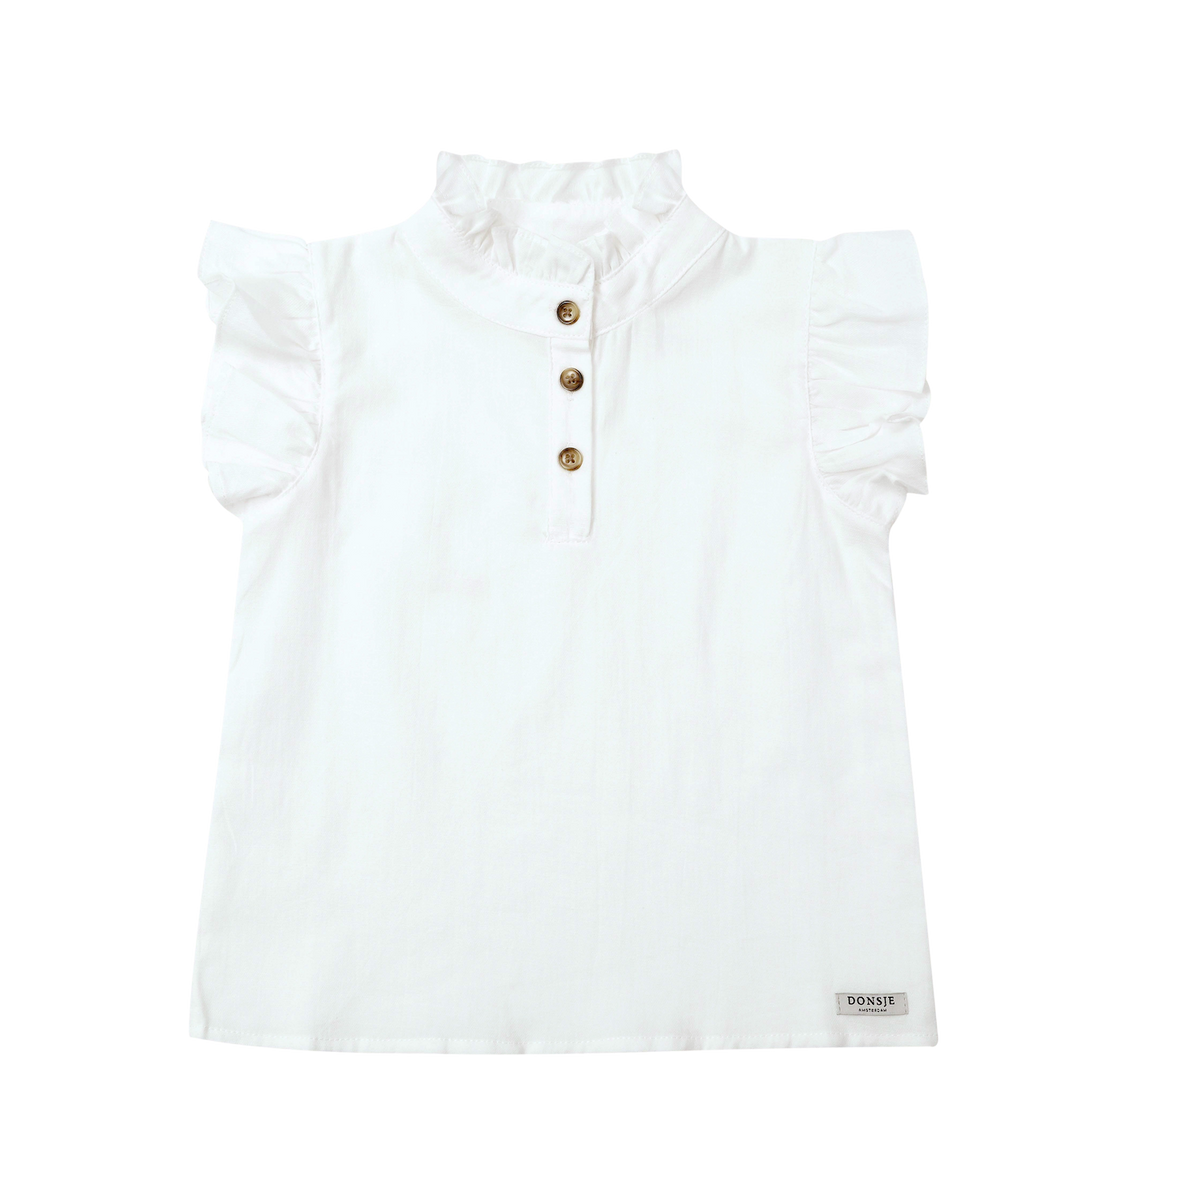 Liki blouse crispy white, Donsje Amsterdam